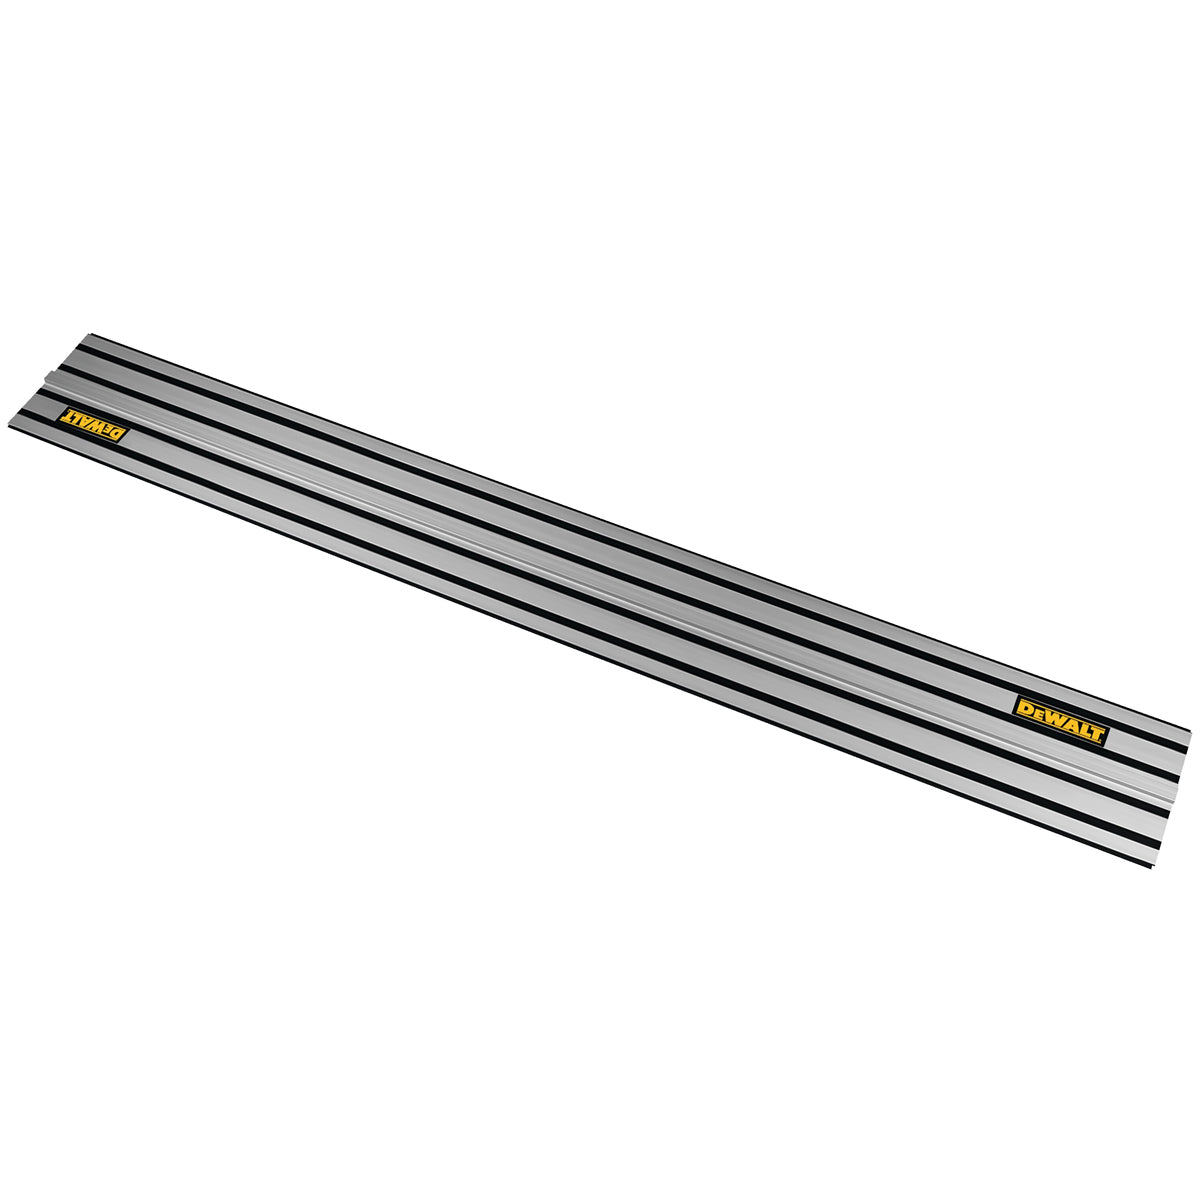 DeWalt DWS5022 1.5M Guide Rail Tracksaw for Plunge Saw